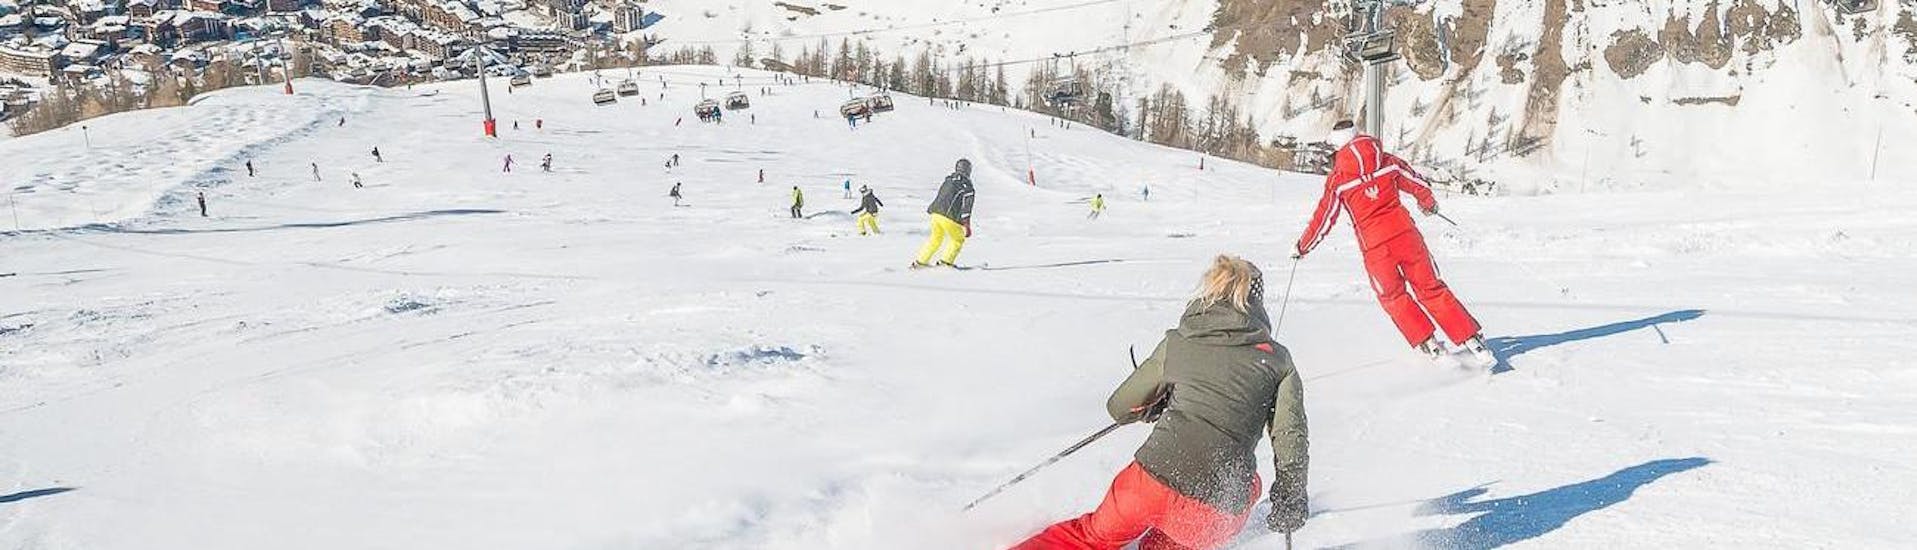 Gli sciatori adulti stanno imparando a sciare mantenendo la giusta postura nel corso delle lezioni di sci per adulti - tutti i livelli organizzate dalla scuola ESF Val d'Isère.